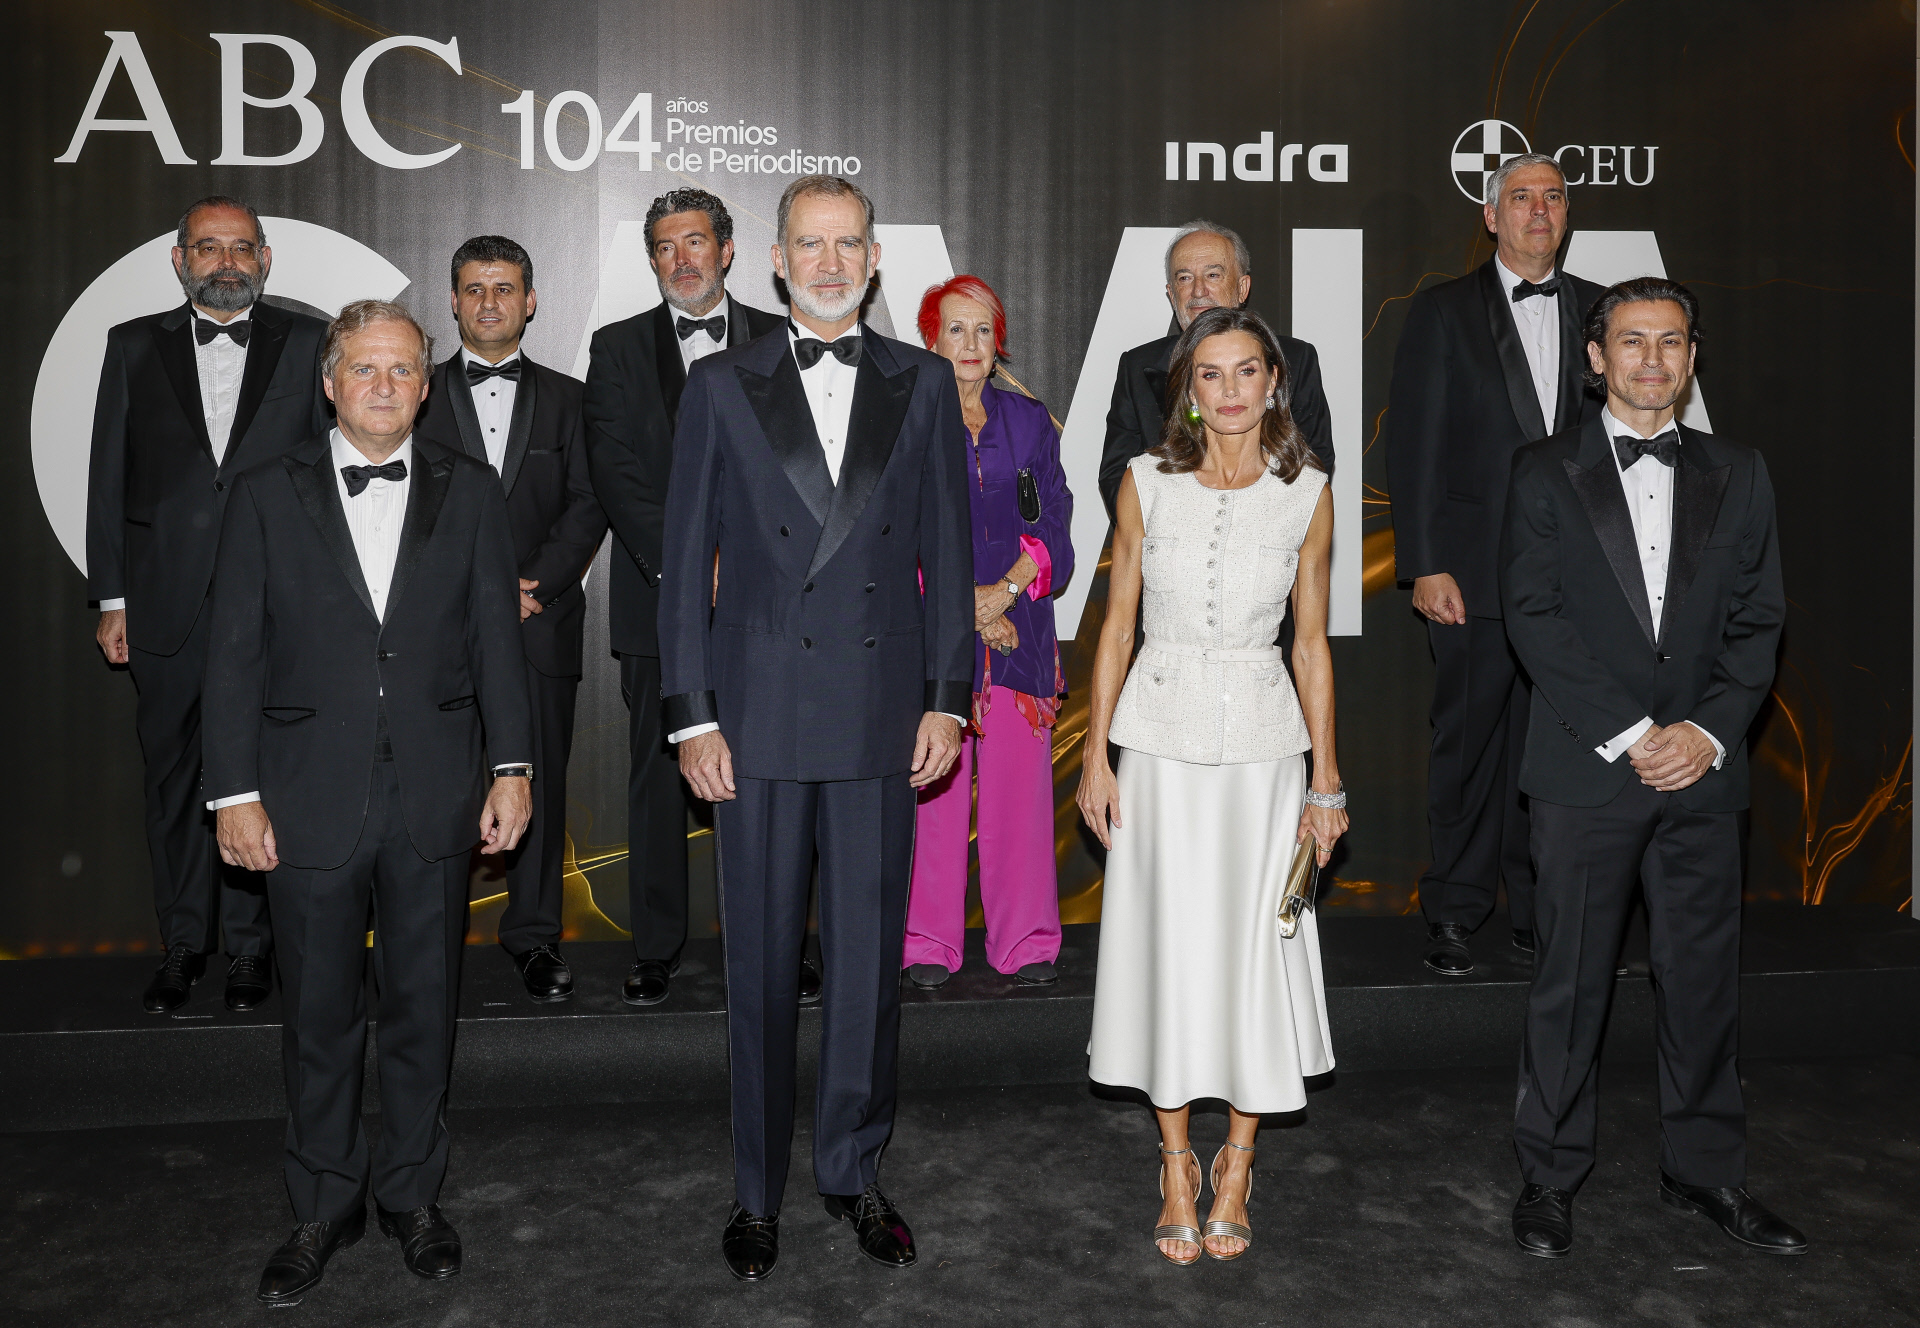 Los Reyes de España presiden la entrega de los premios de periodismo ABC 'Mariano de Cavia', 'Luca de Tena' y 'Mingote'